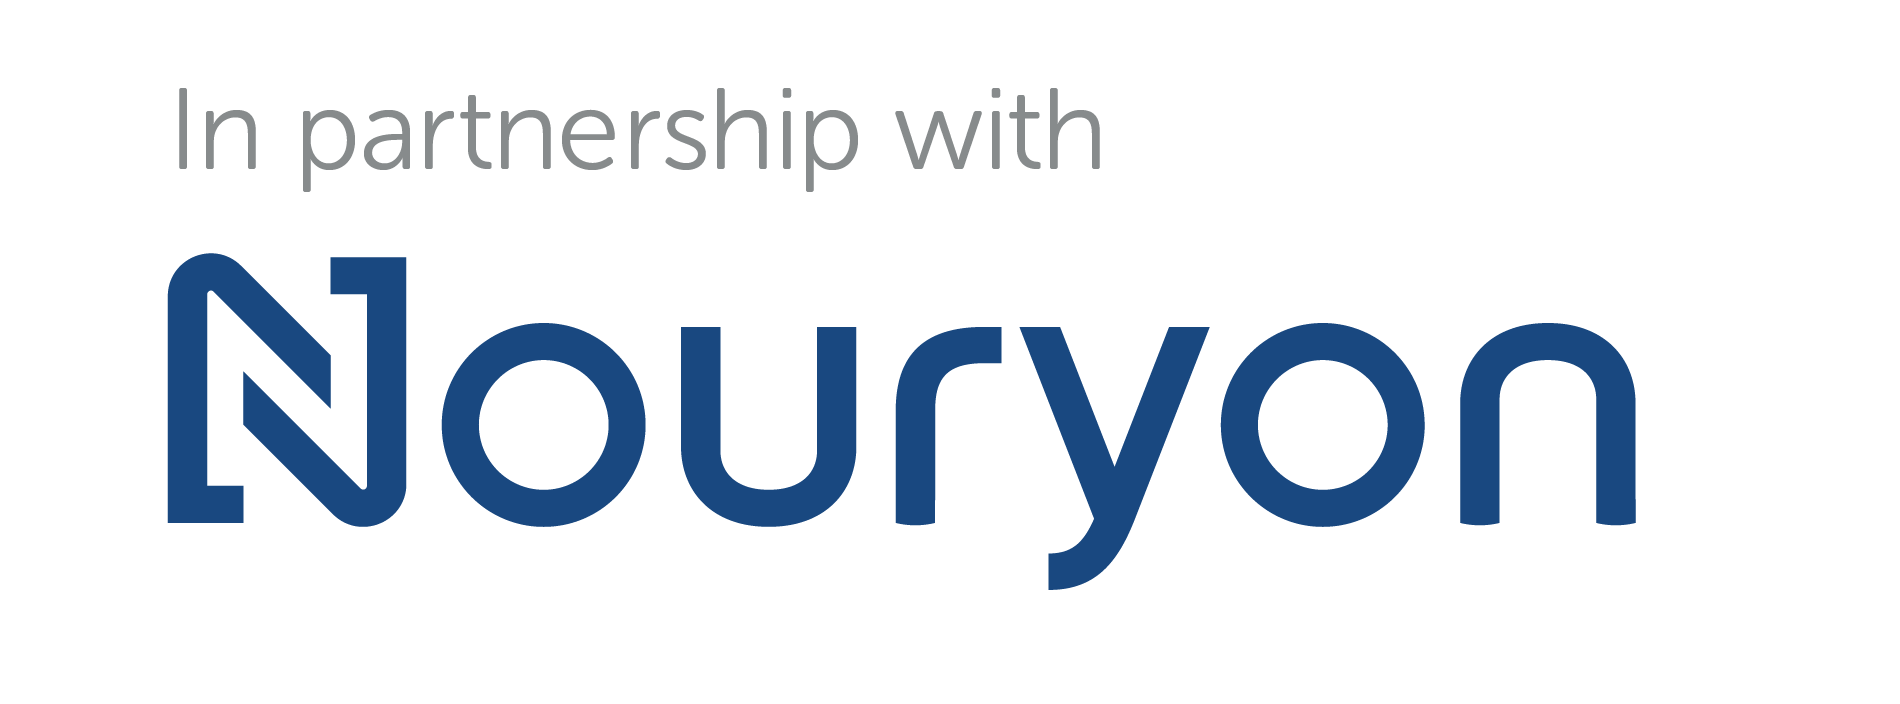 Logo Nouryon Partnership